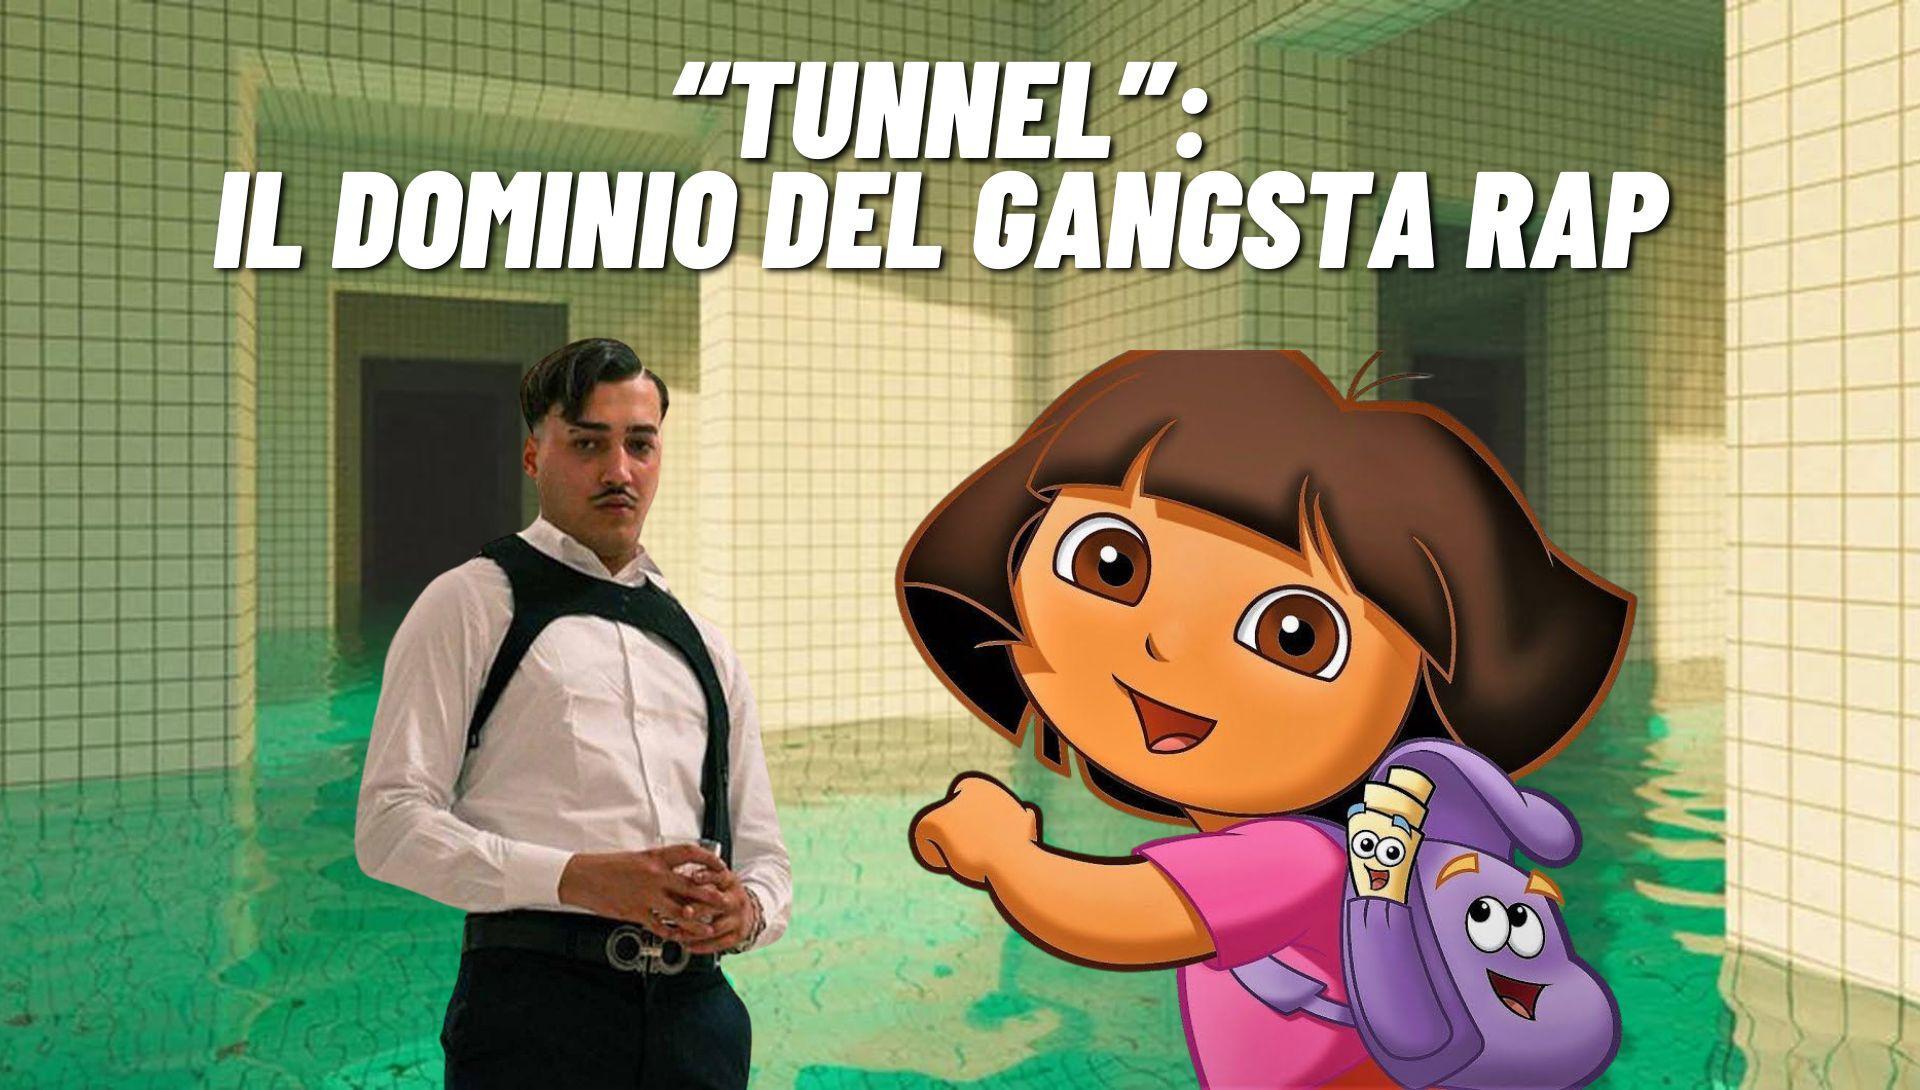 Simba La Rue e 'Tunnel': il Dominio Controverso del Gangsta Rap - Zainet